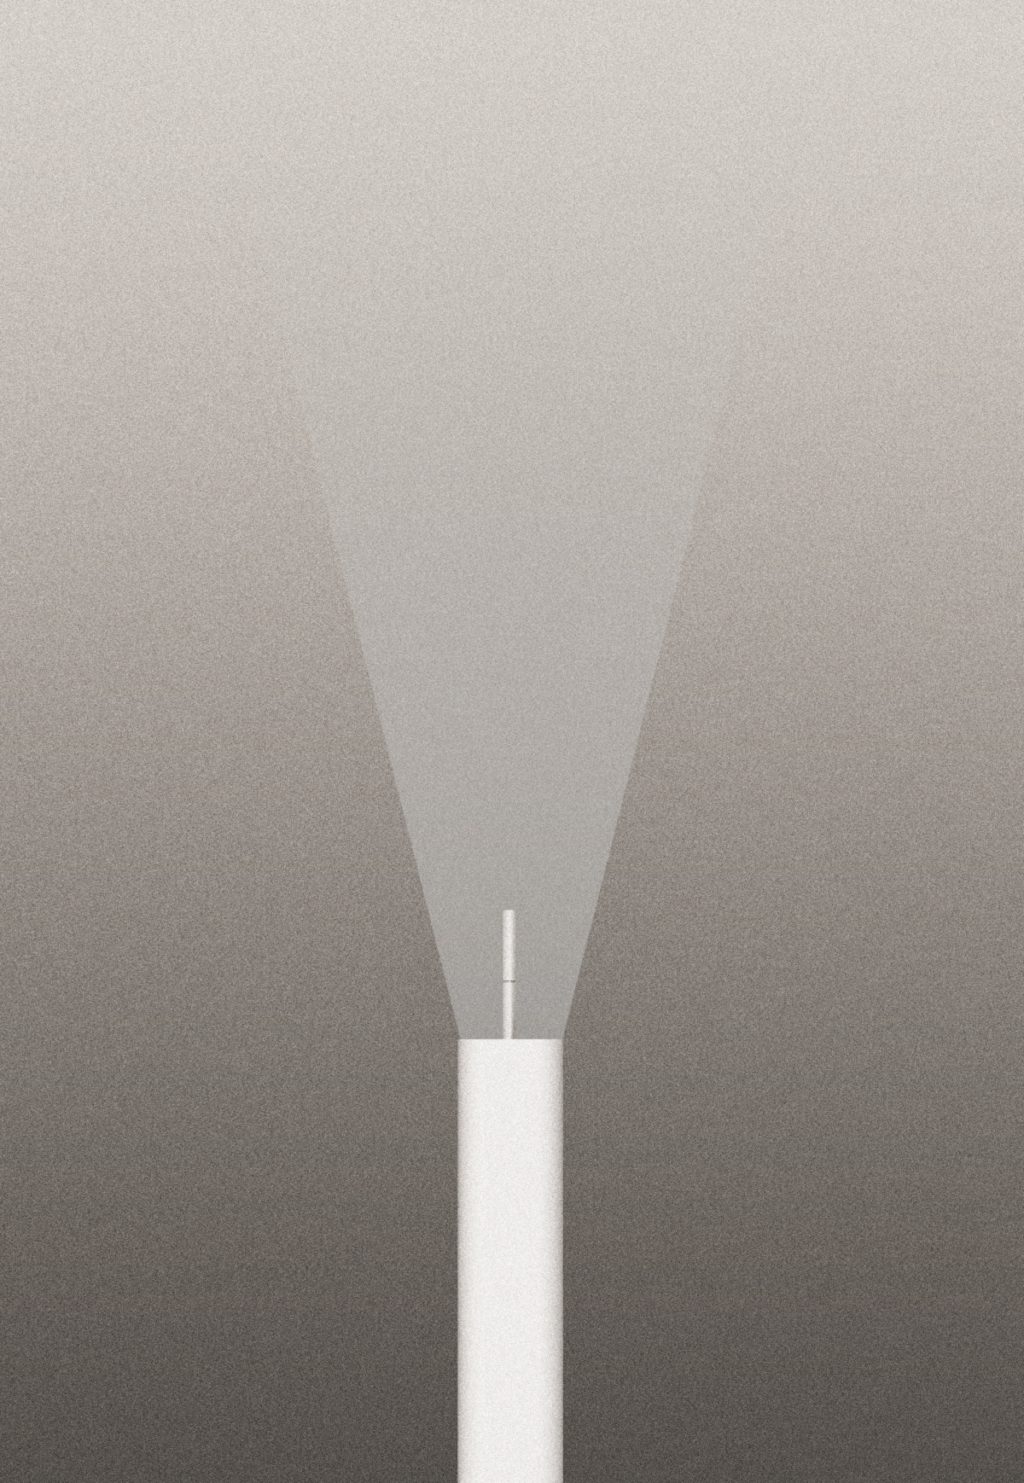 Lampe EMI design Erwan Bouroullec pour Flos